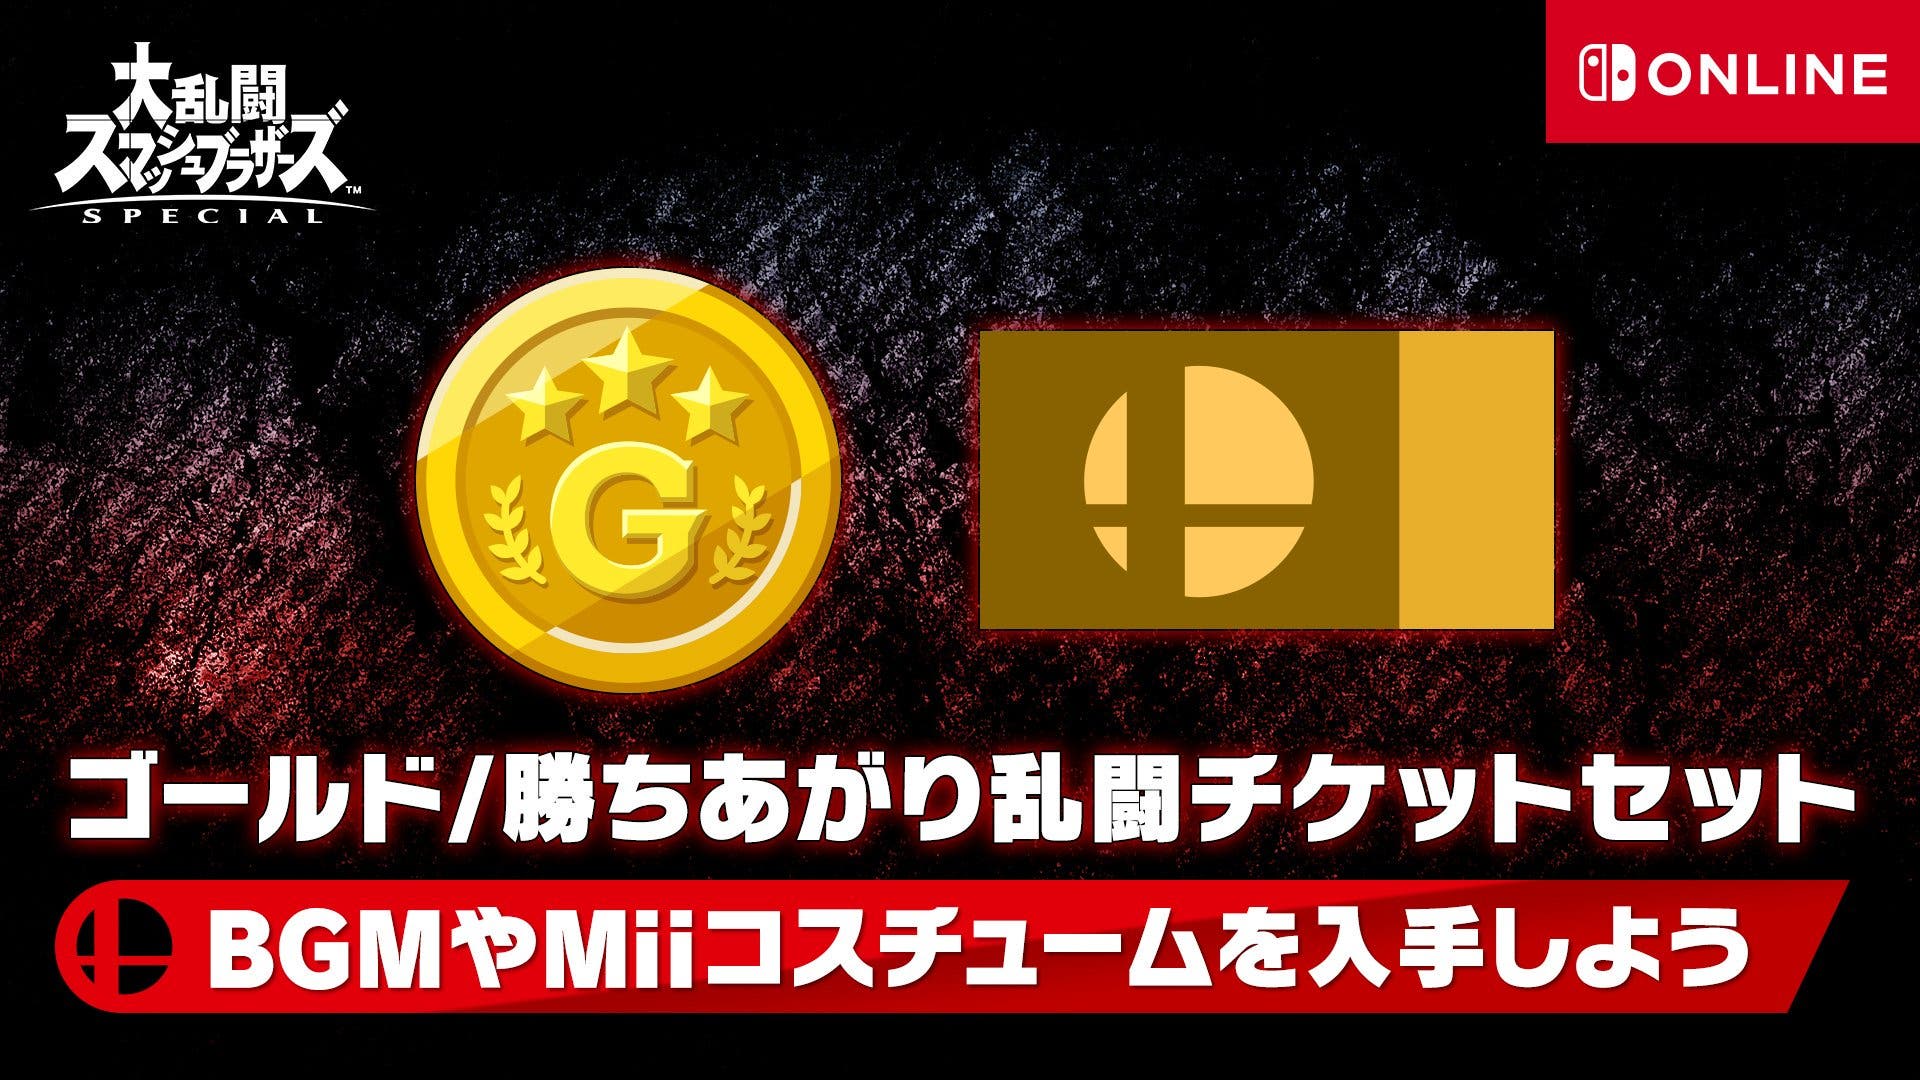 Nuevas recompensas ya disponibles en Super Smash Bros. Ultimate para suscriptores de Nintendo Switch Online